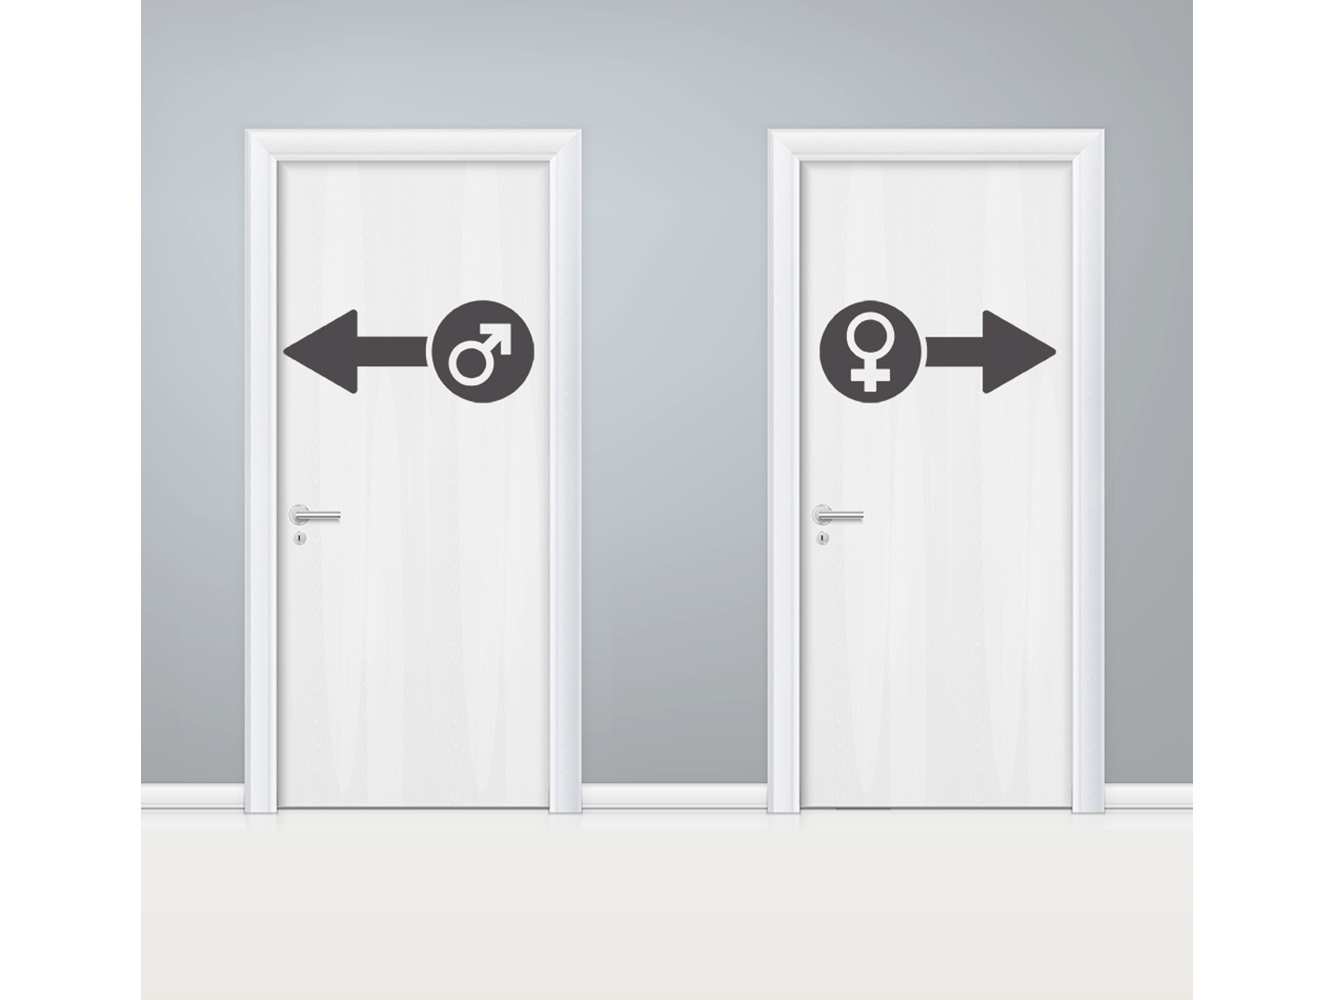 Vinilo Puerta WC Flechas Masculino y Femenino | Carteles XXL - Impresión carteleria publicitaria